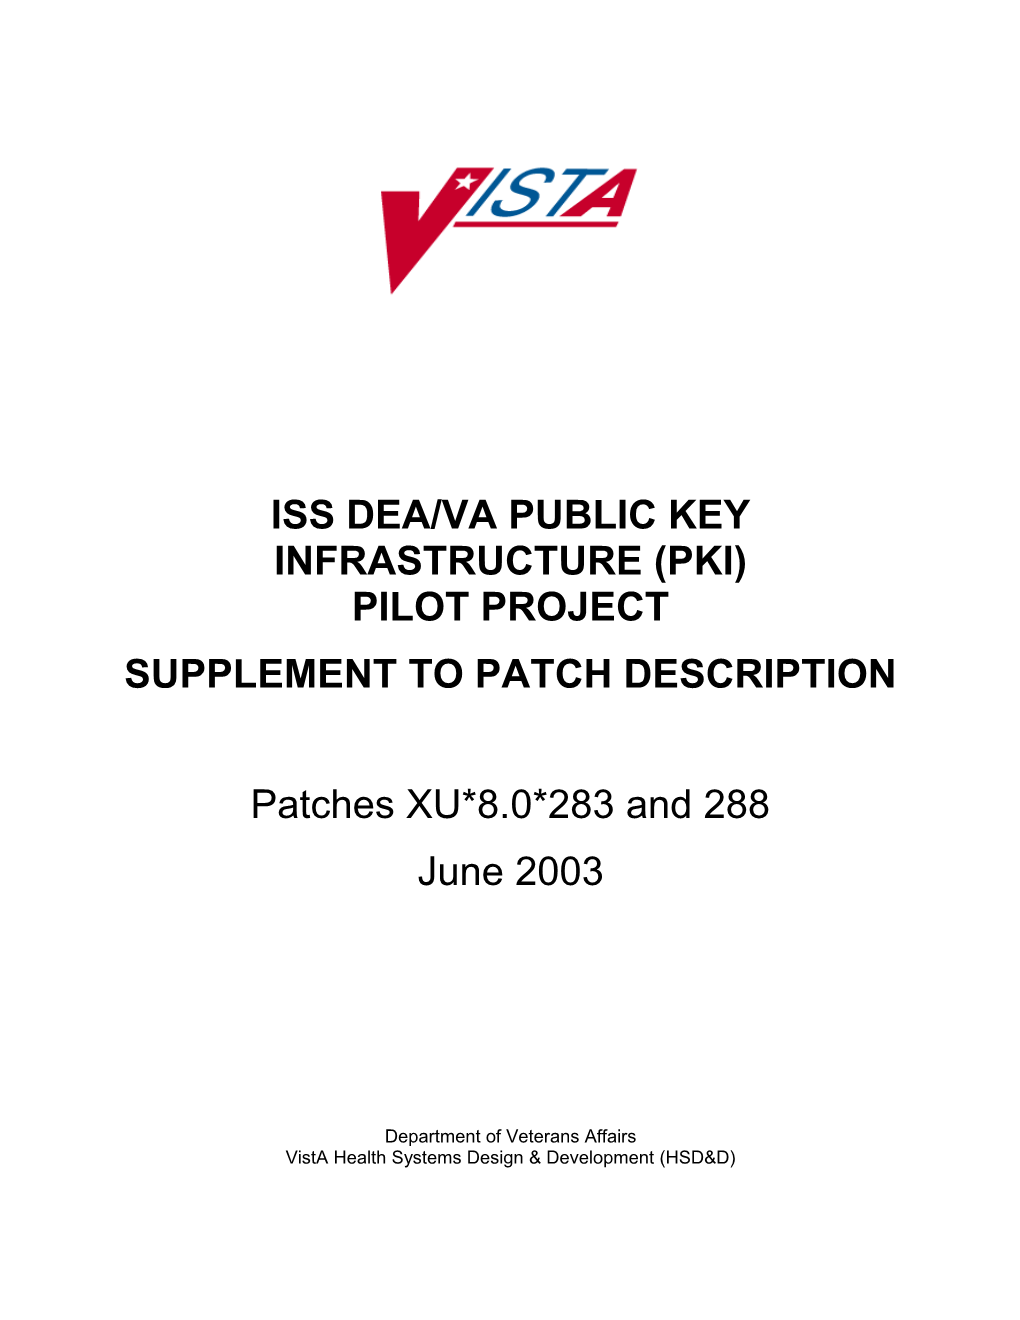 PKI Supplement to Patch Description (XU*8.0*283 & 288)